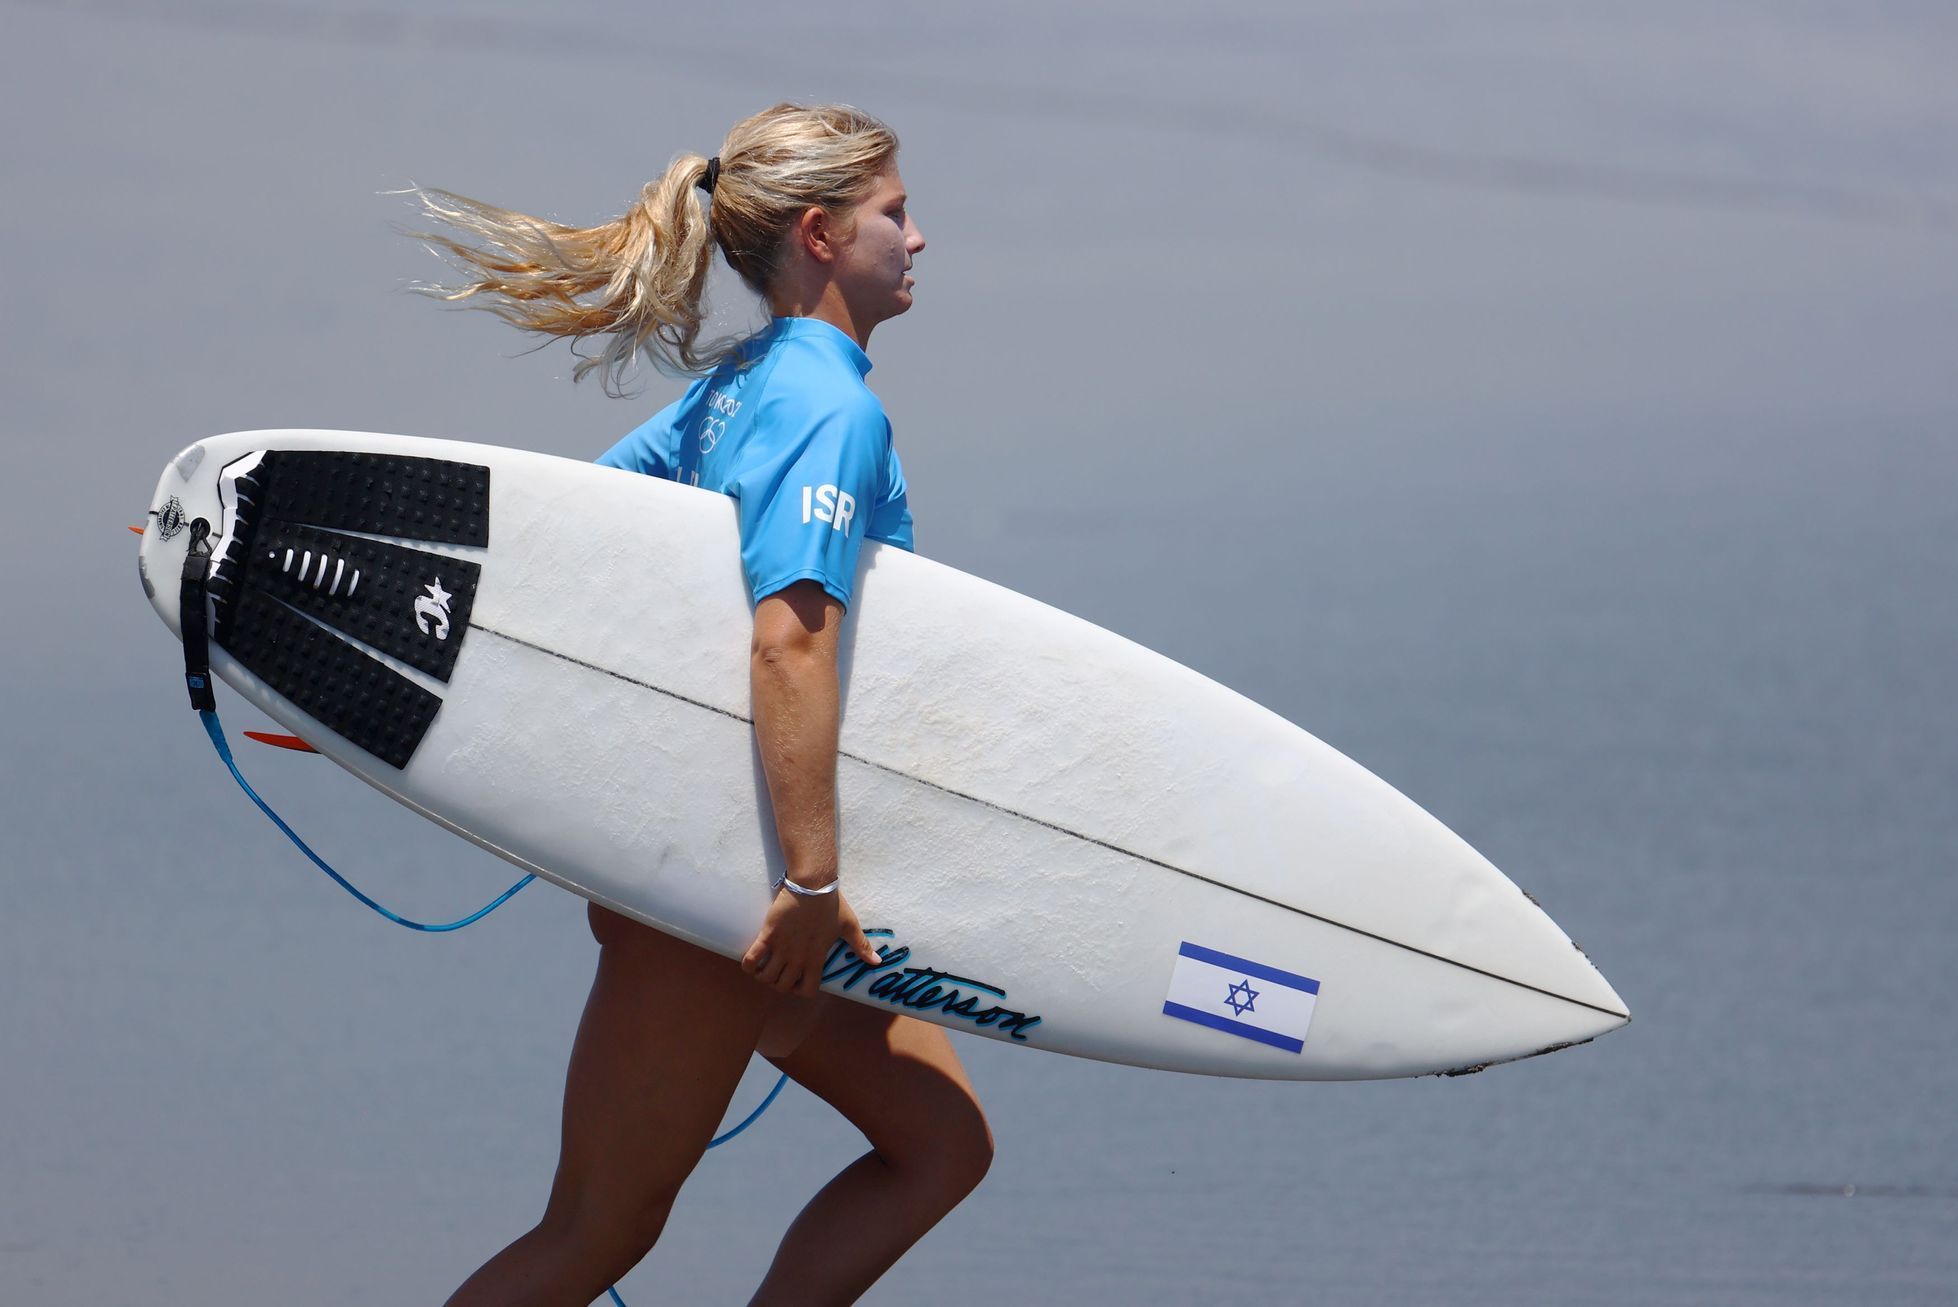 Surfing - Women's Shortboard - Round 1